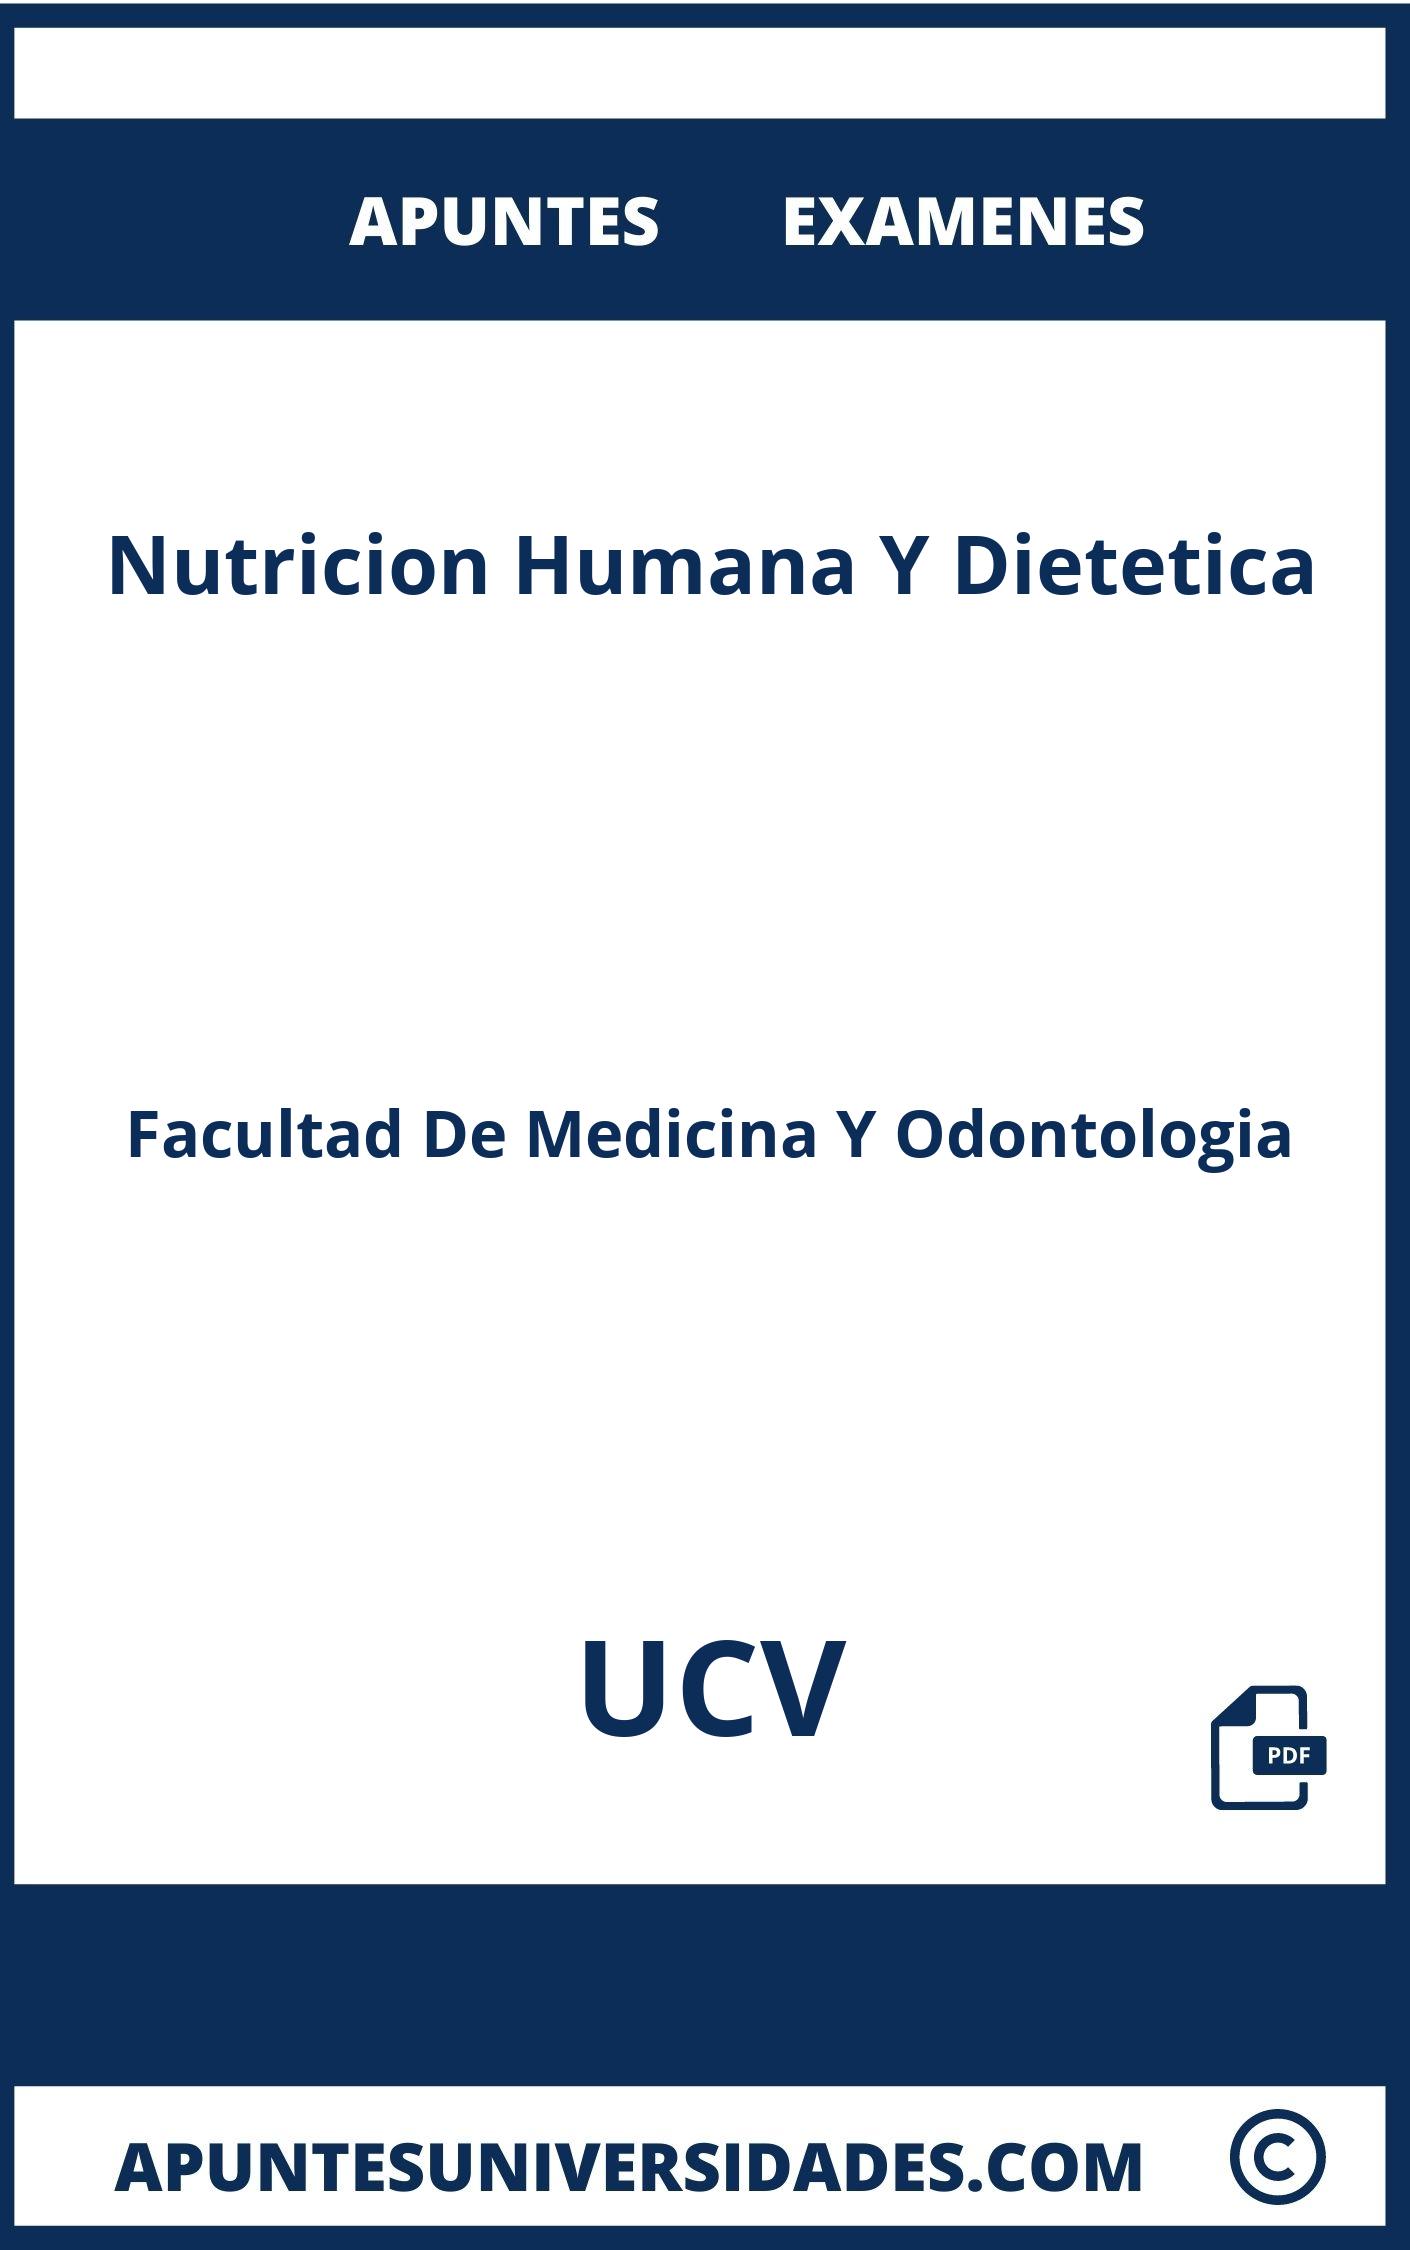 Examenes y Apuntes Nutricion Humana Y Dietetica UCV